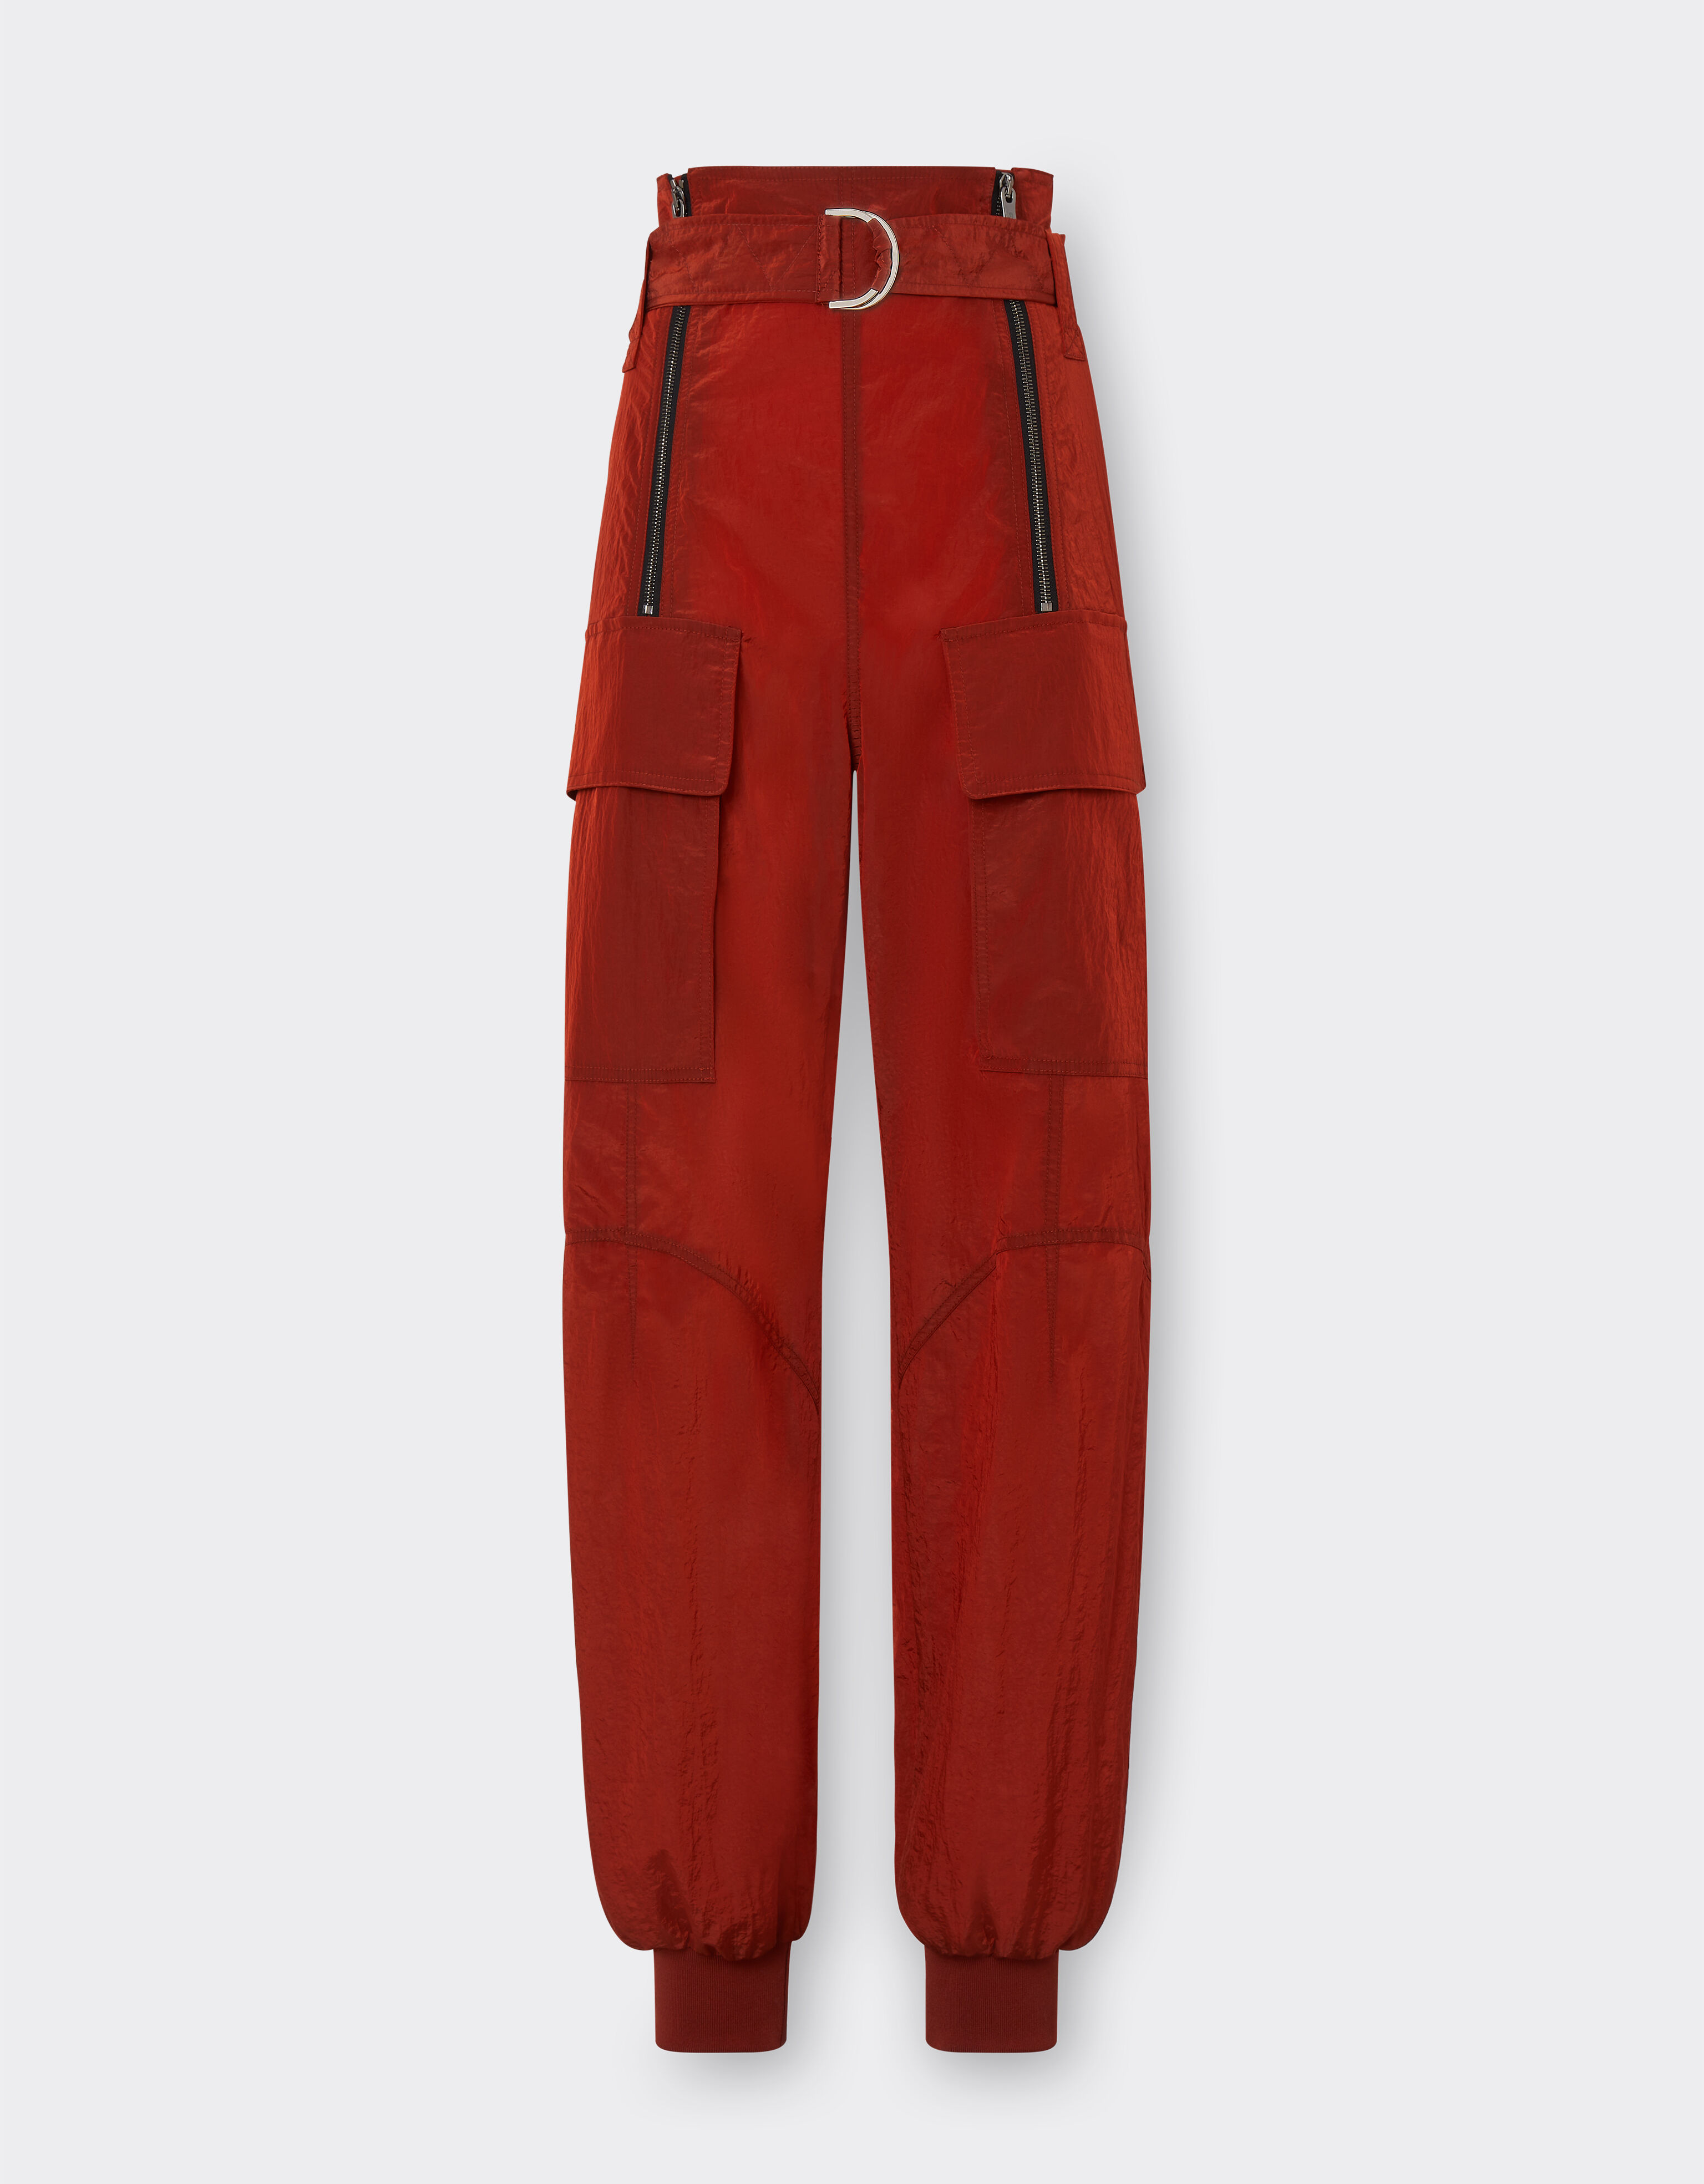 Ferrari 尼龙工装裤 铁锈色 48507f